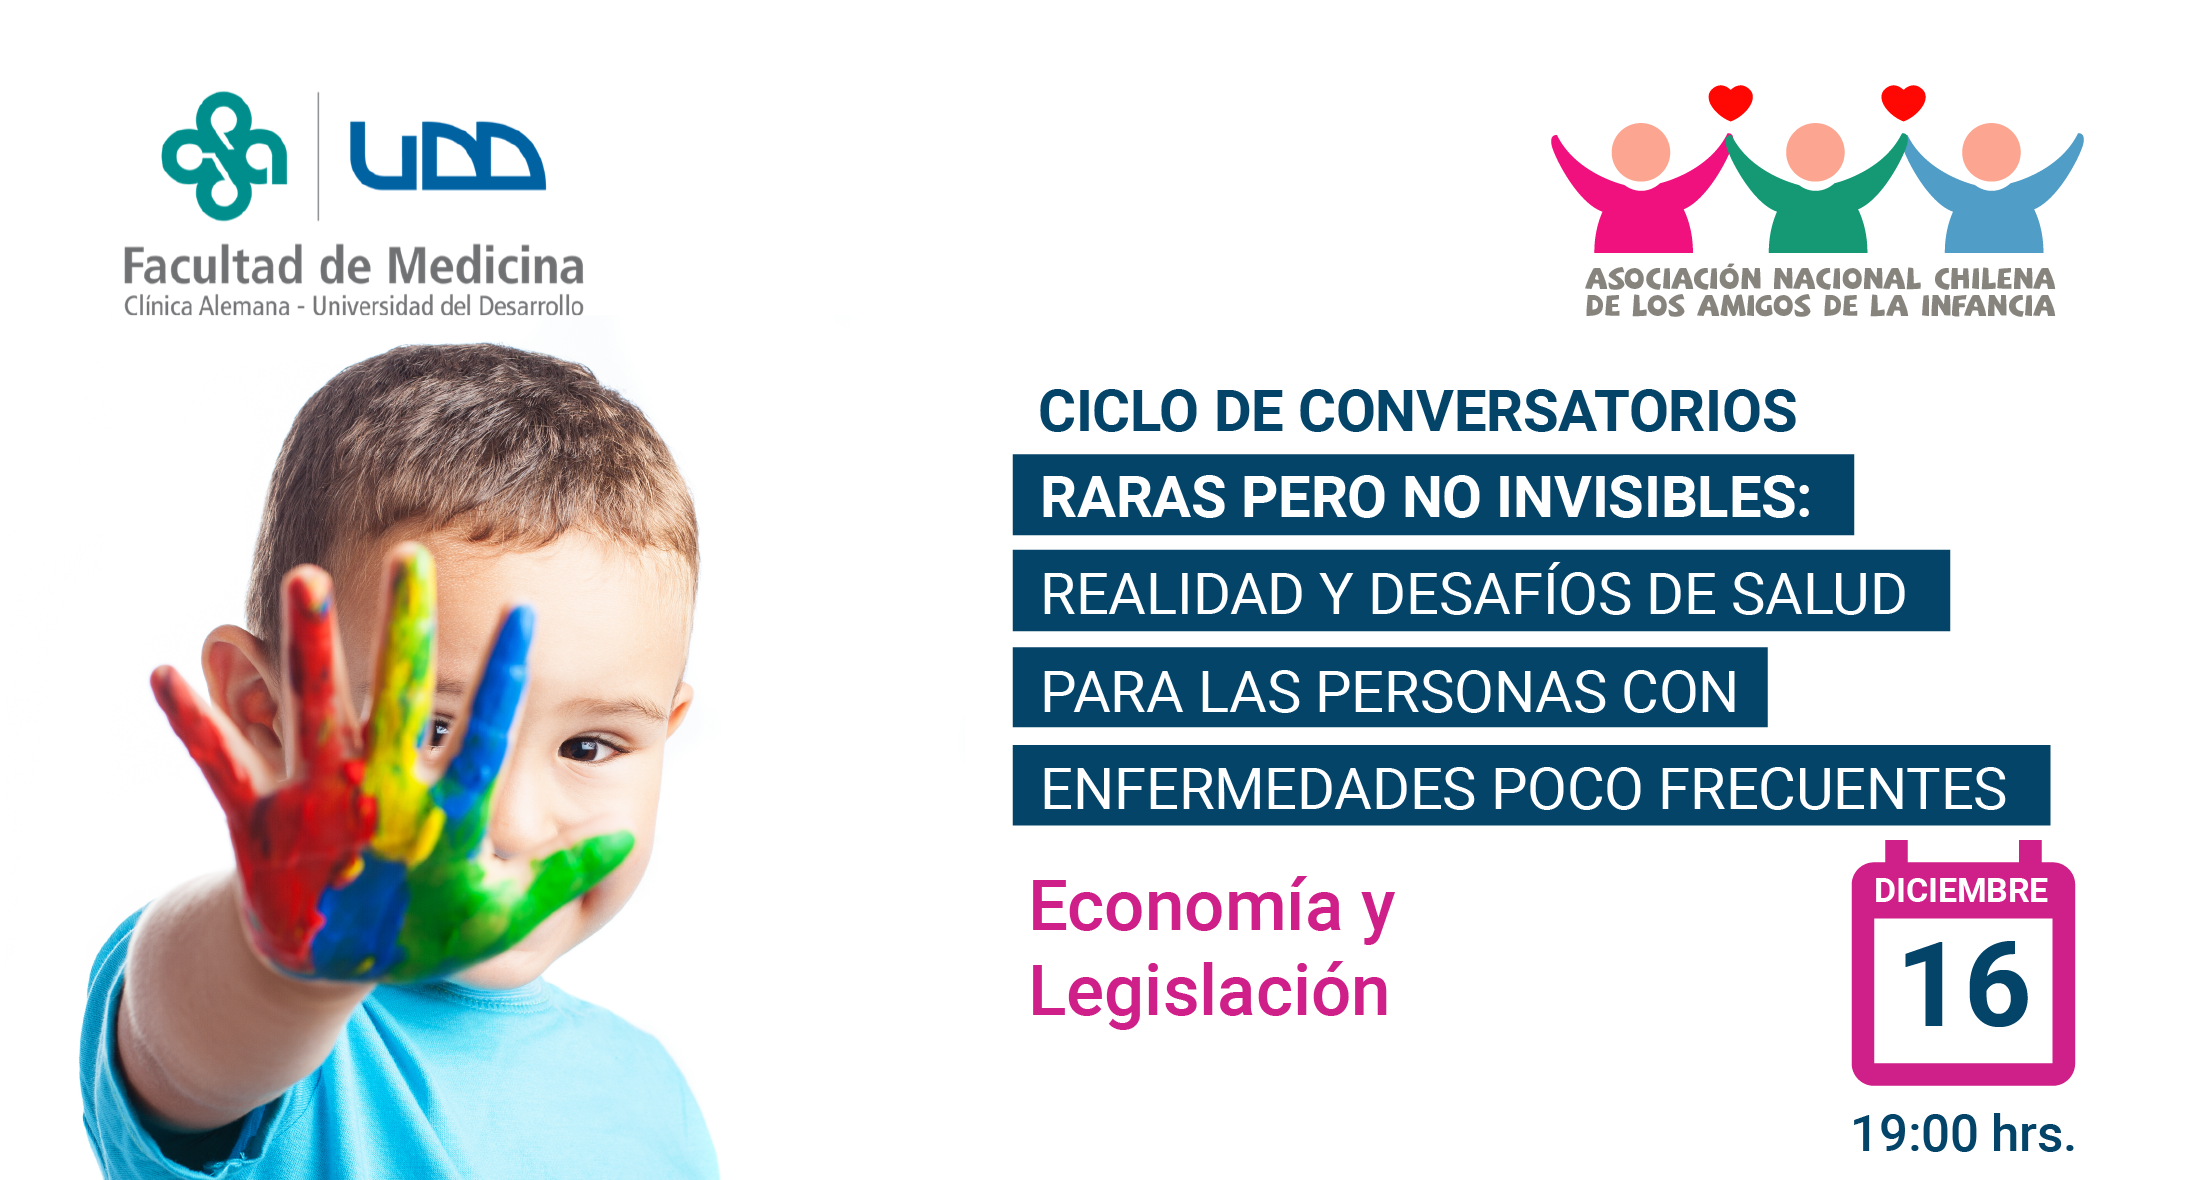 Ciclo de Conversatorios: Panel de Expertos Abordará Realidad de Enfermedades Poco Frecuentes en Chile